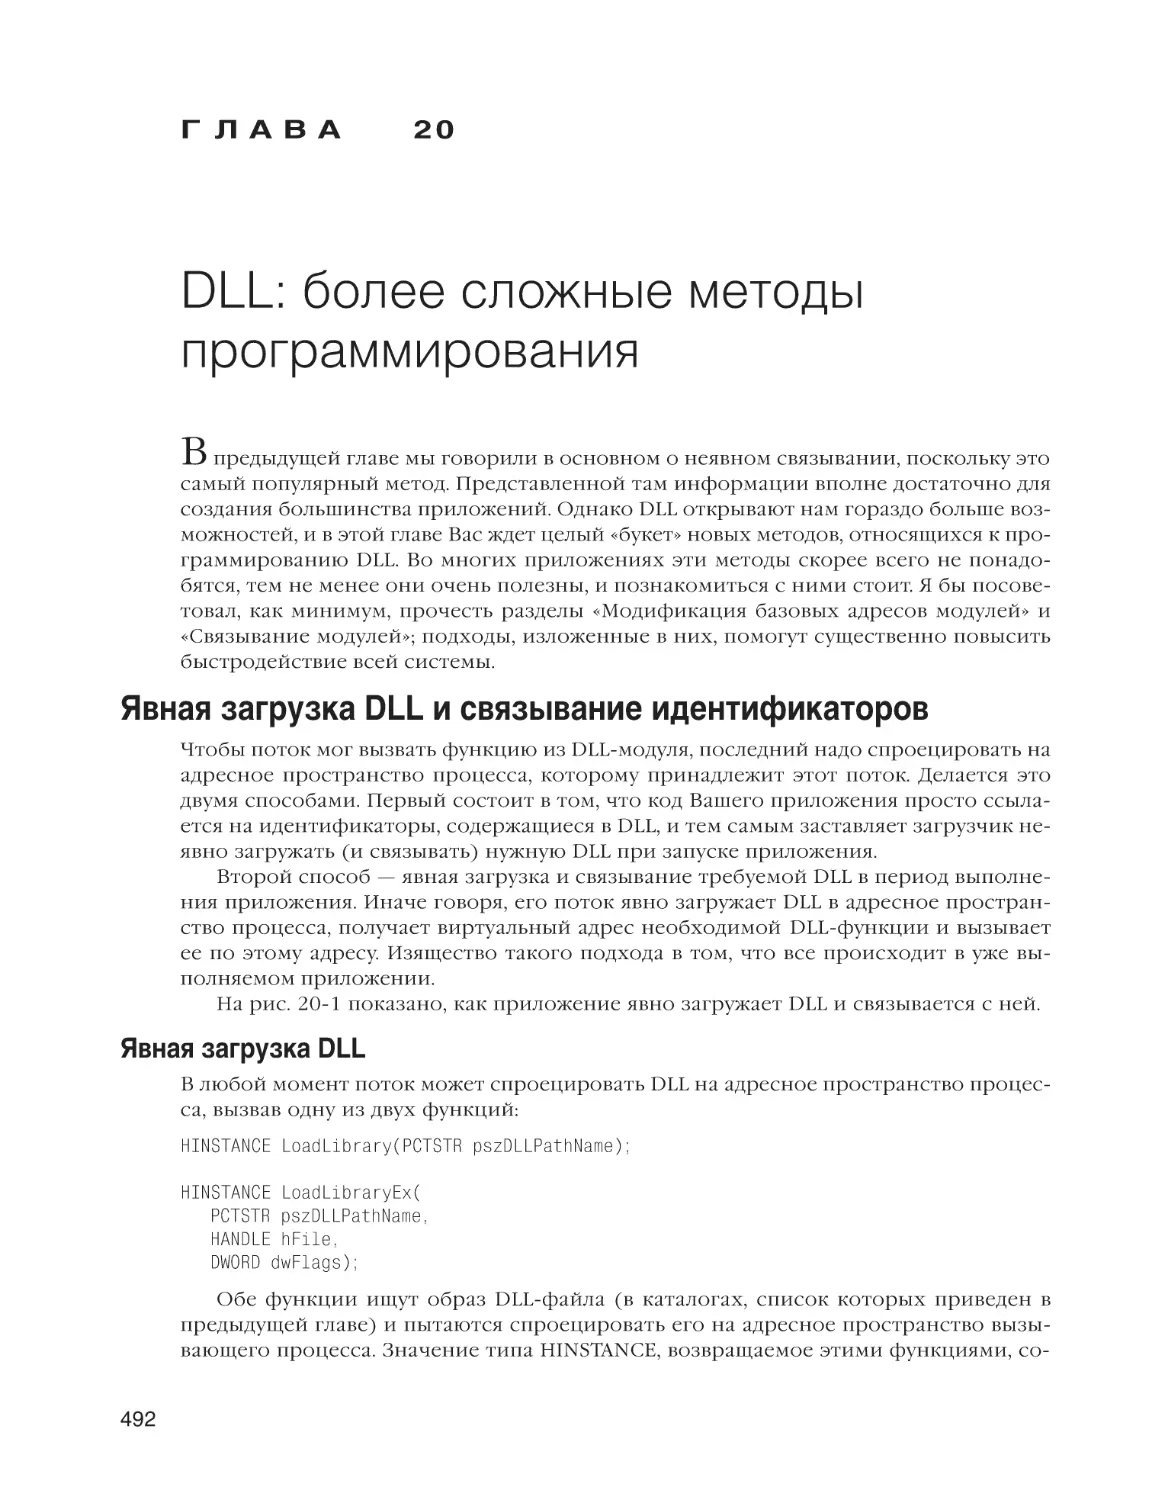 Глава 20. DLL
Явная загрузка DLL и связывание идентификаторов
Явная загрузка DLL